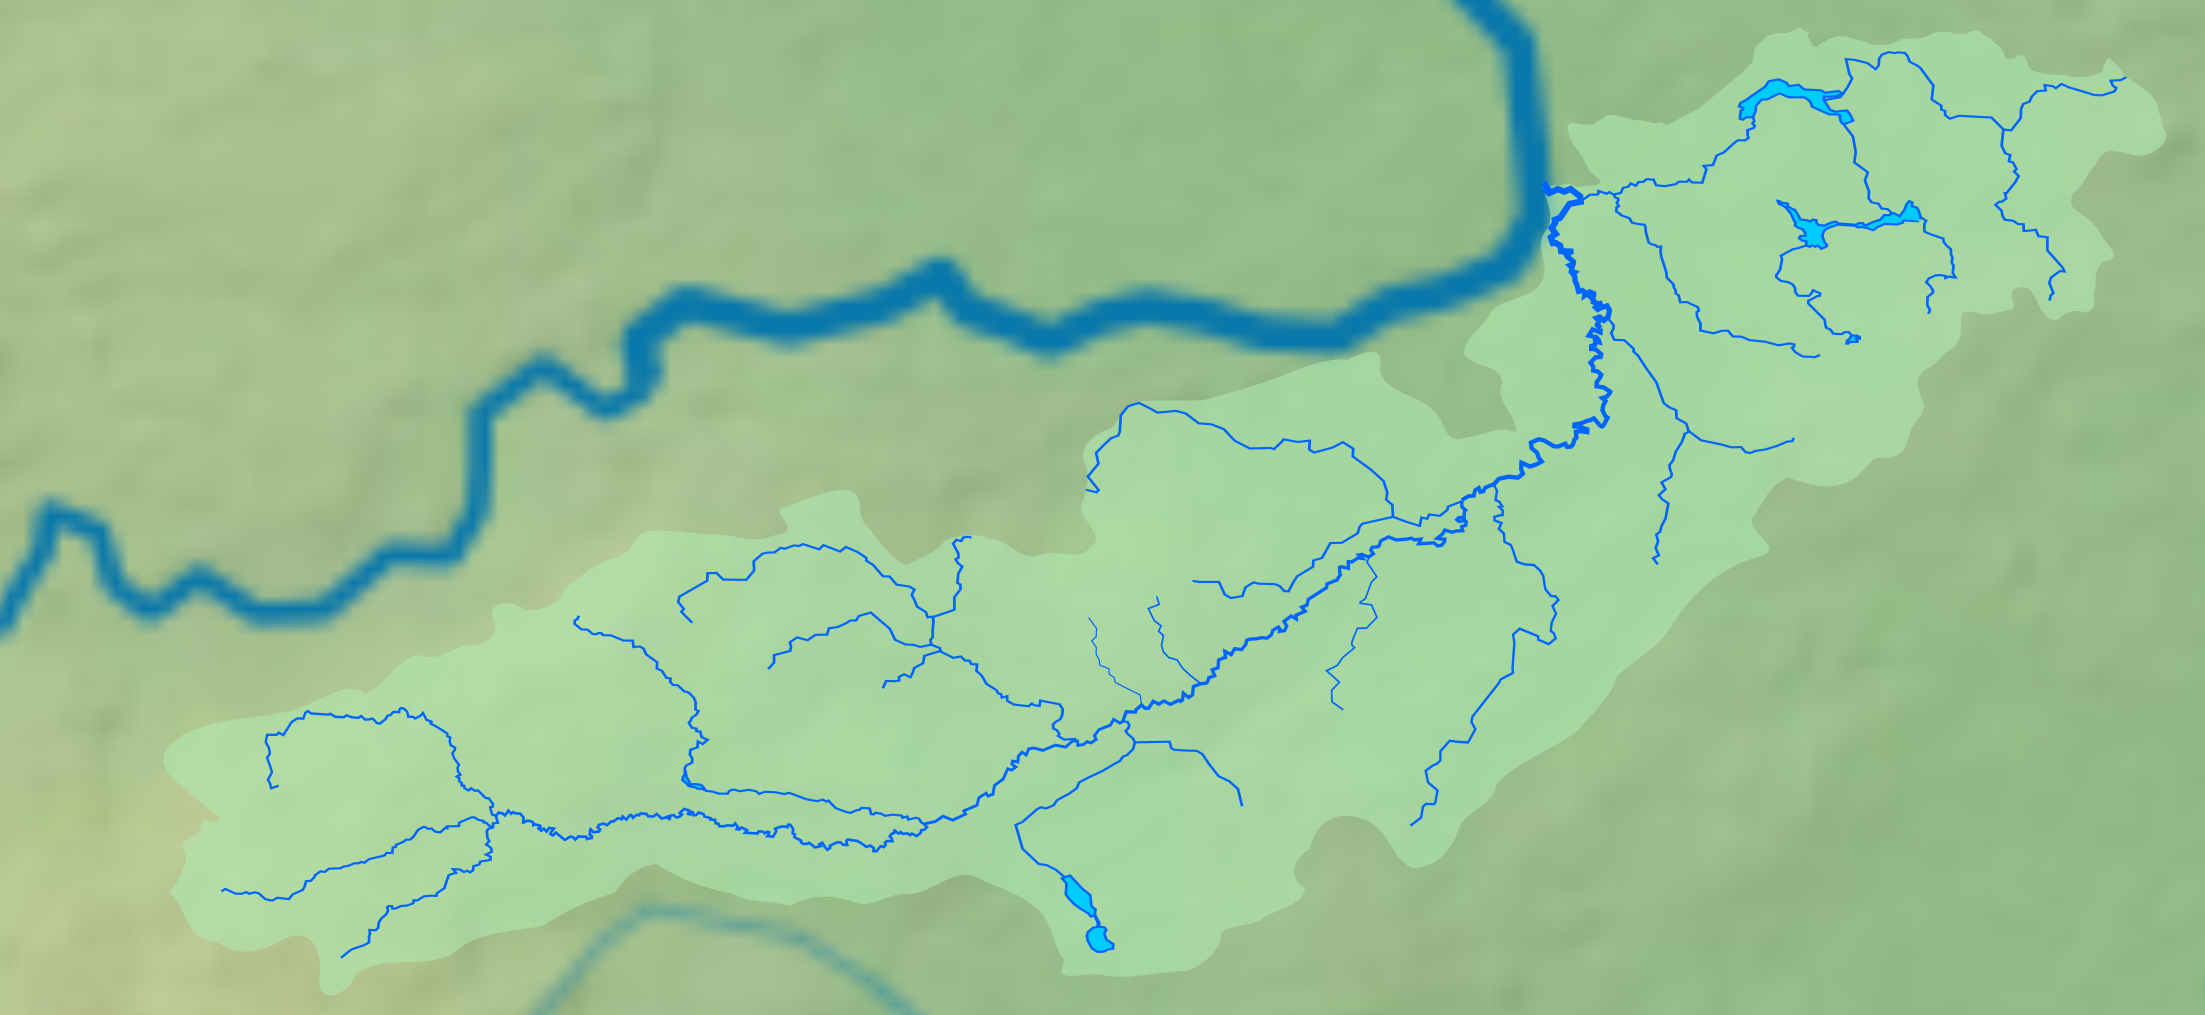 Код бассейна реки. Бассейн реки Рось. Бассейн реки Днепр. Бассейн реки Истра. Водный бассейн реки.